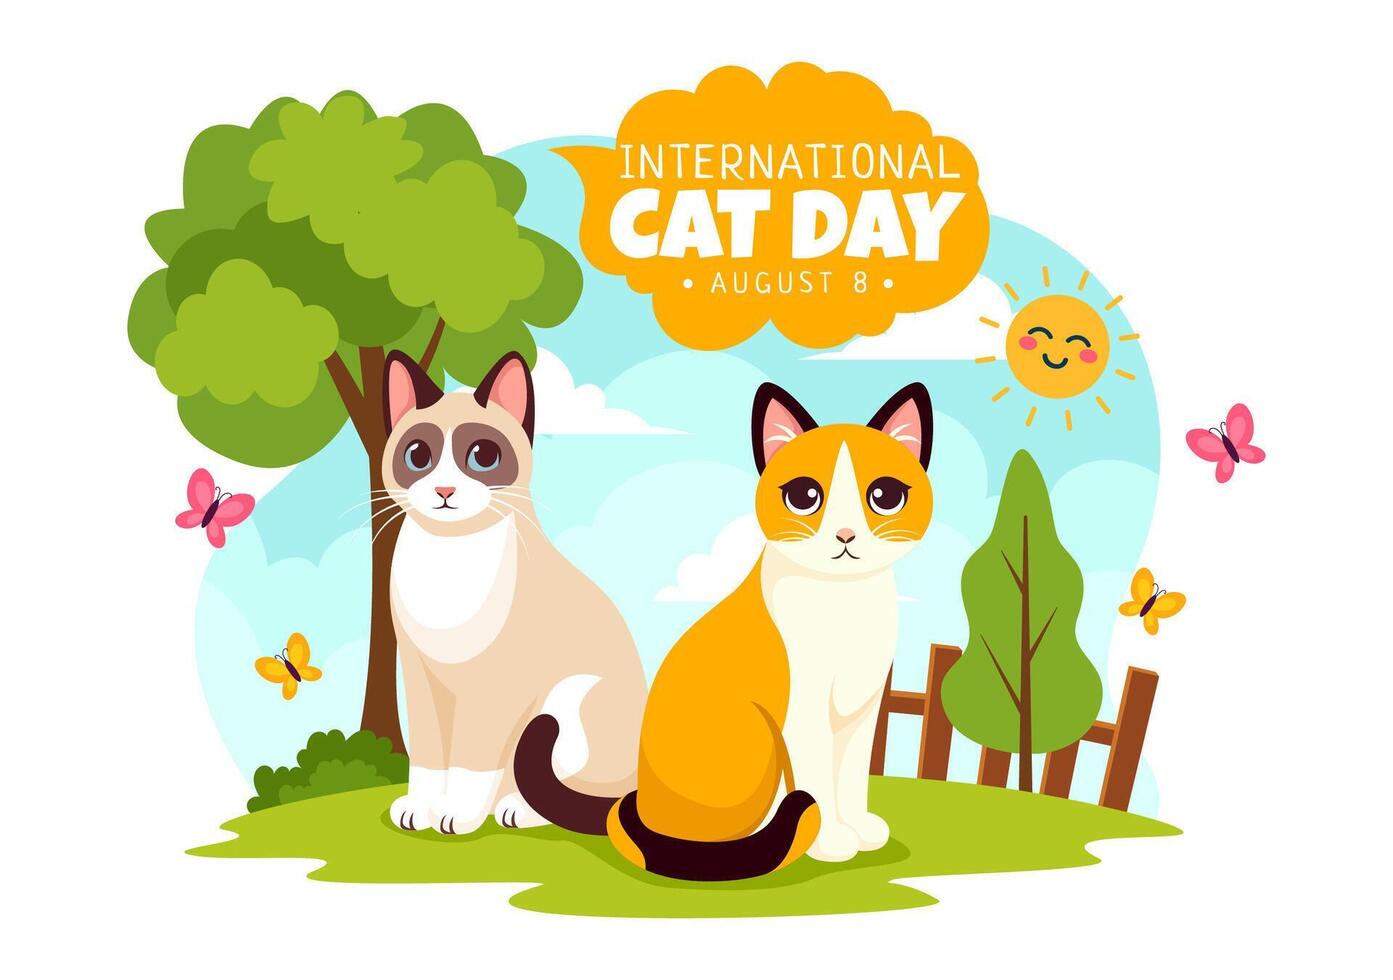 internationell katt dag illustration på augusti 8 med katter djur kärlek firande i platt tecknad serie bakgrund design vektor